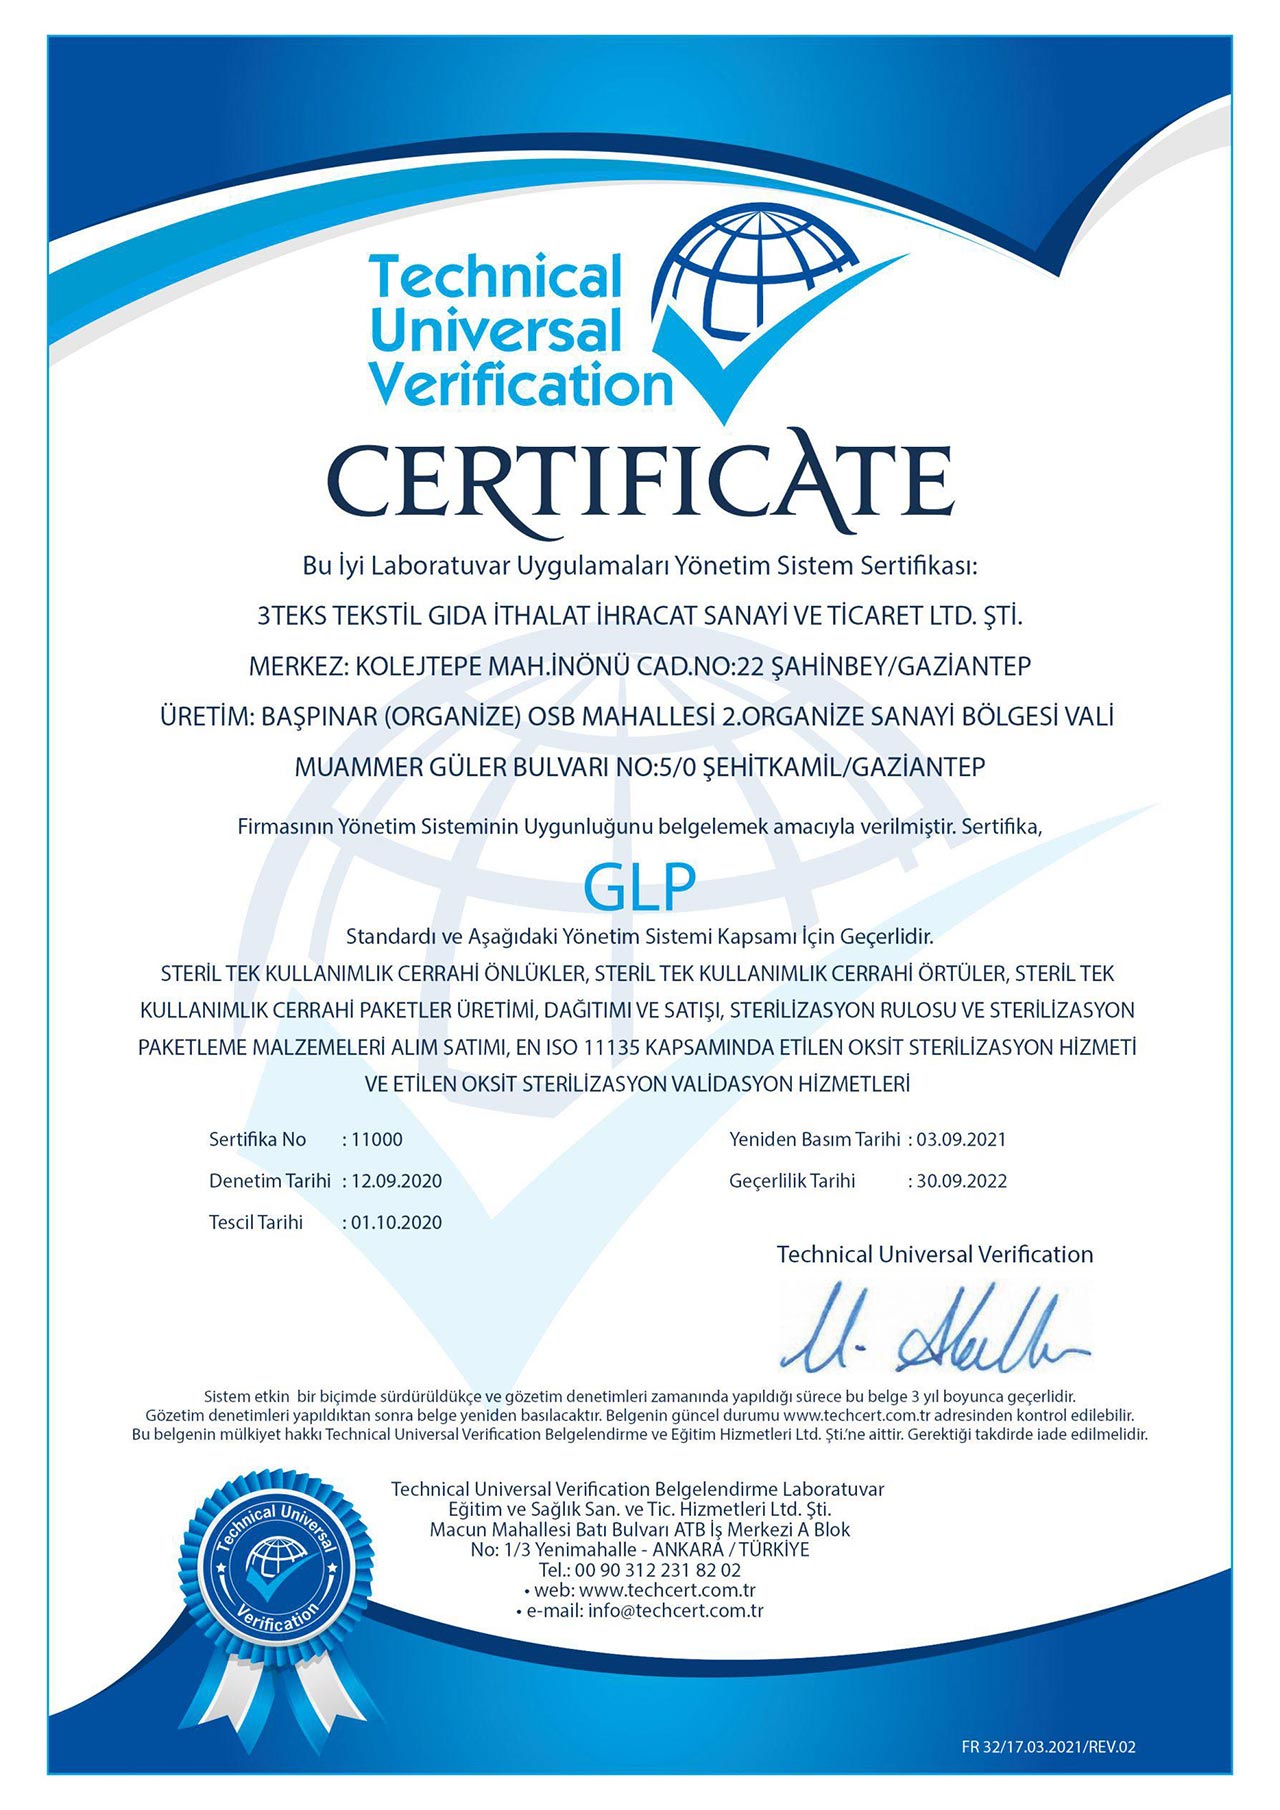 GLP İyi Laboratuvar Uygulamaları Yönetim Sistem Sertifikası